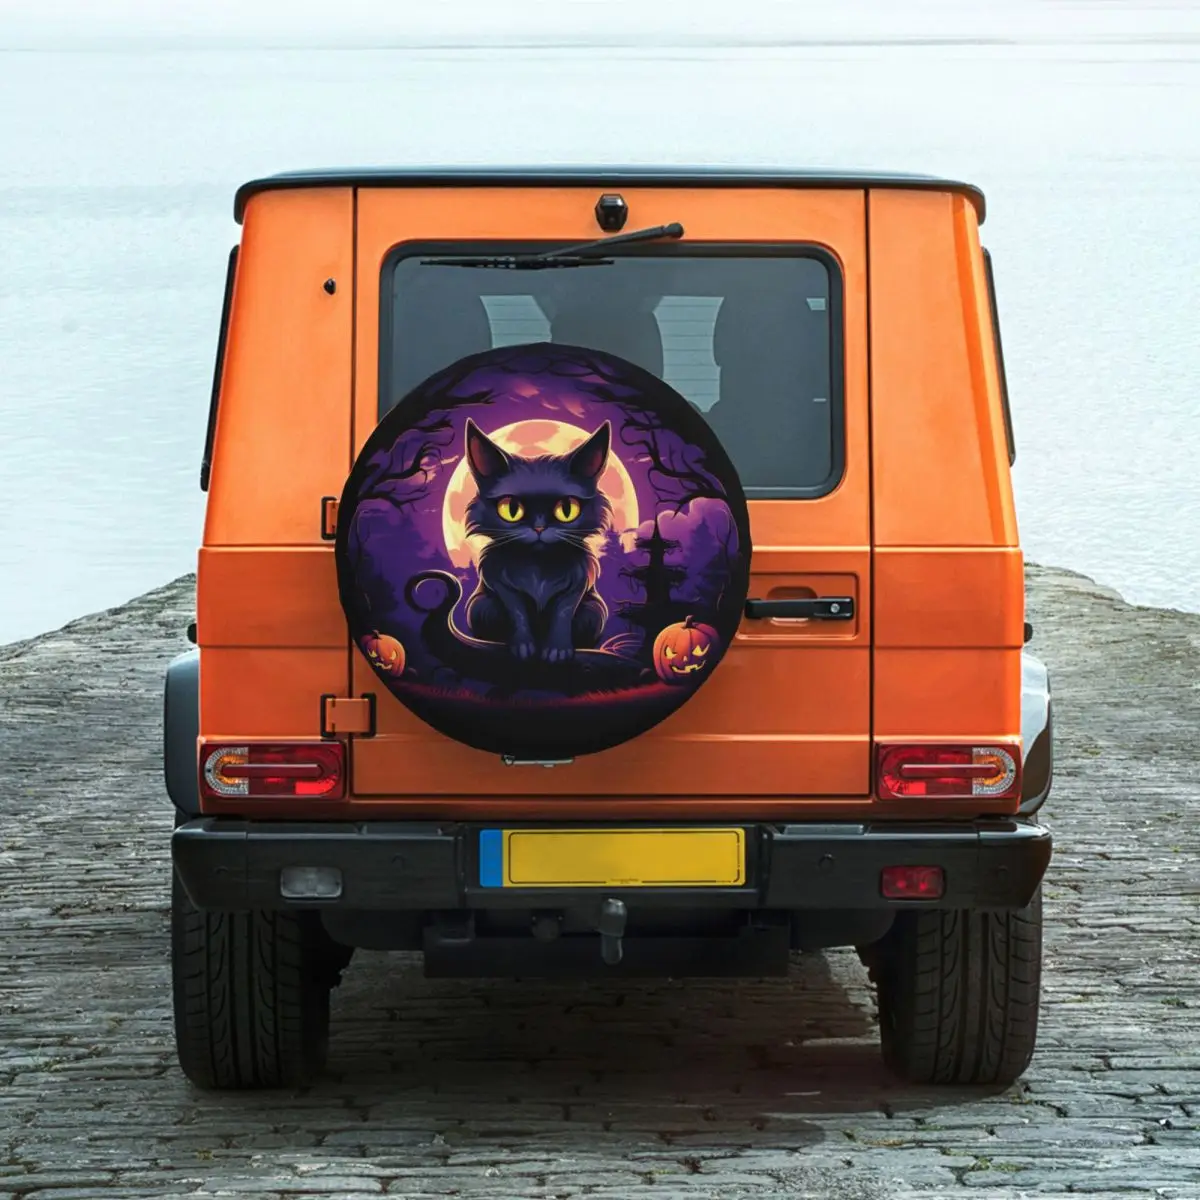 

Чехол для запасной шины в виде кошки на Хэллоуин, защищенный от атмосферных воздействий, универсальный чехол для трейлера, домов на колесах, внедорожника, грузовика, аксессуары для транспортных средств